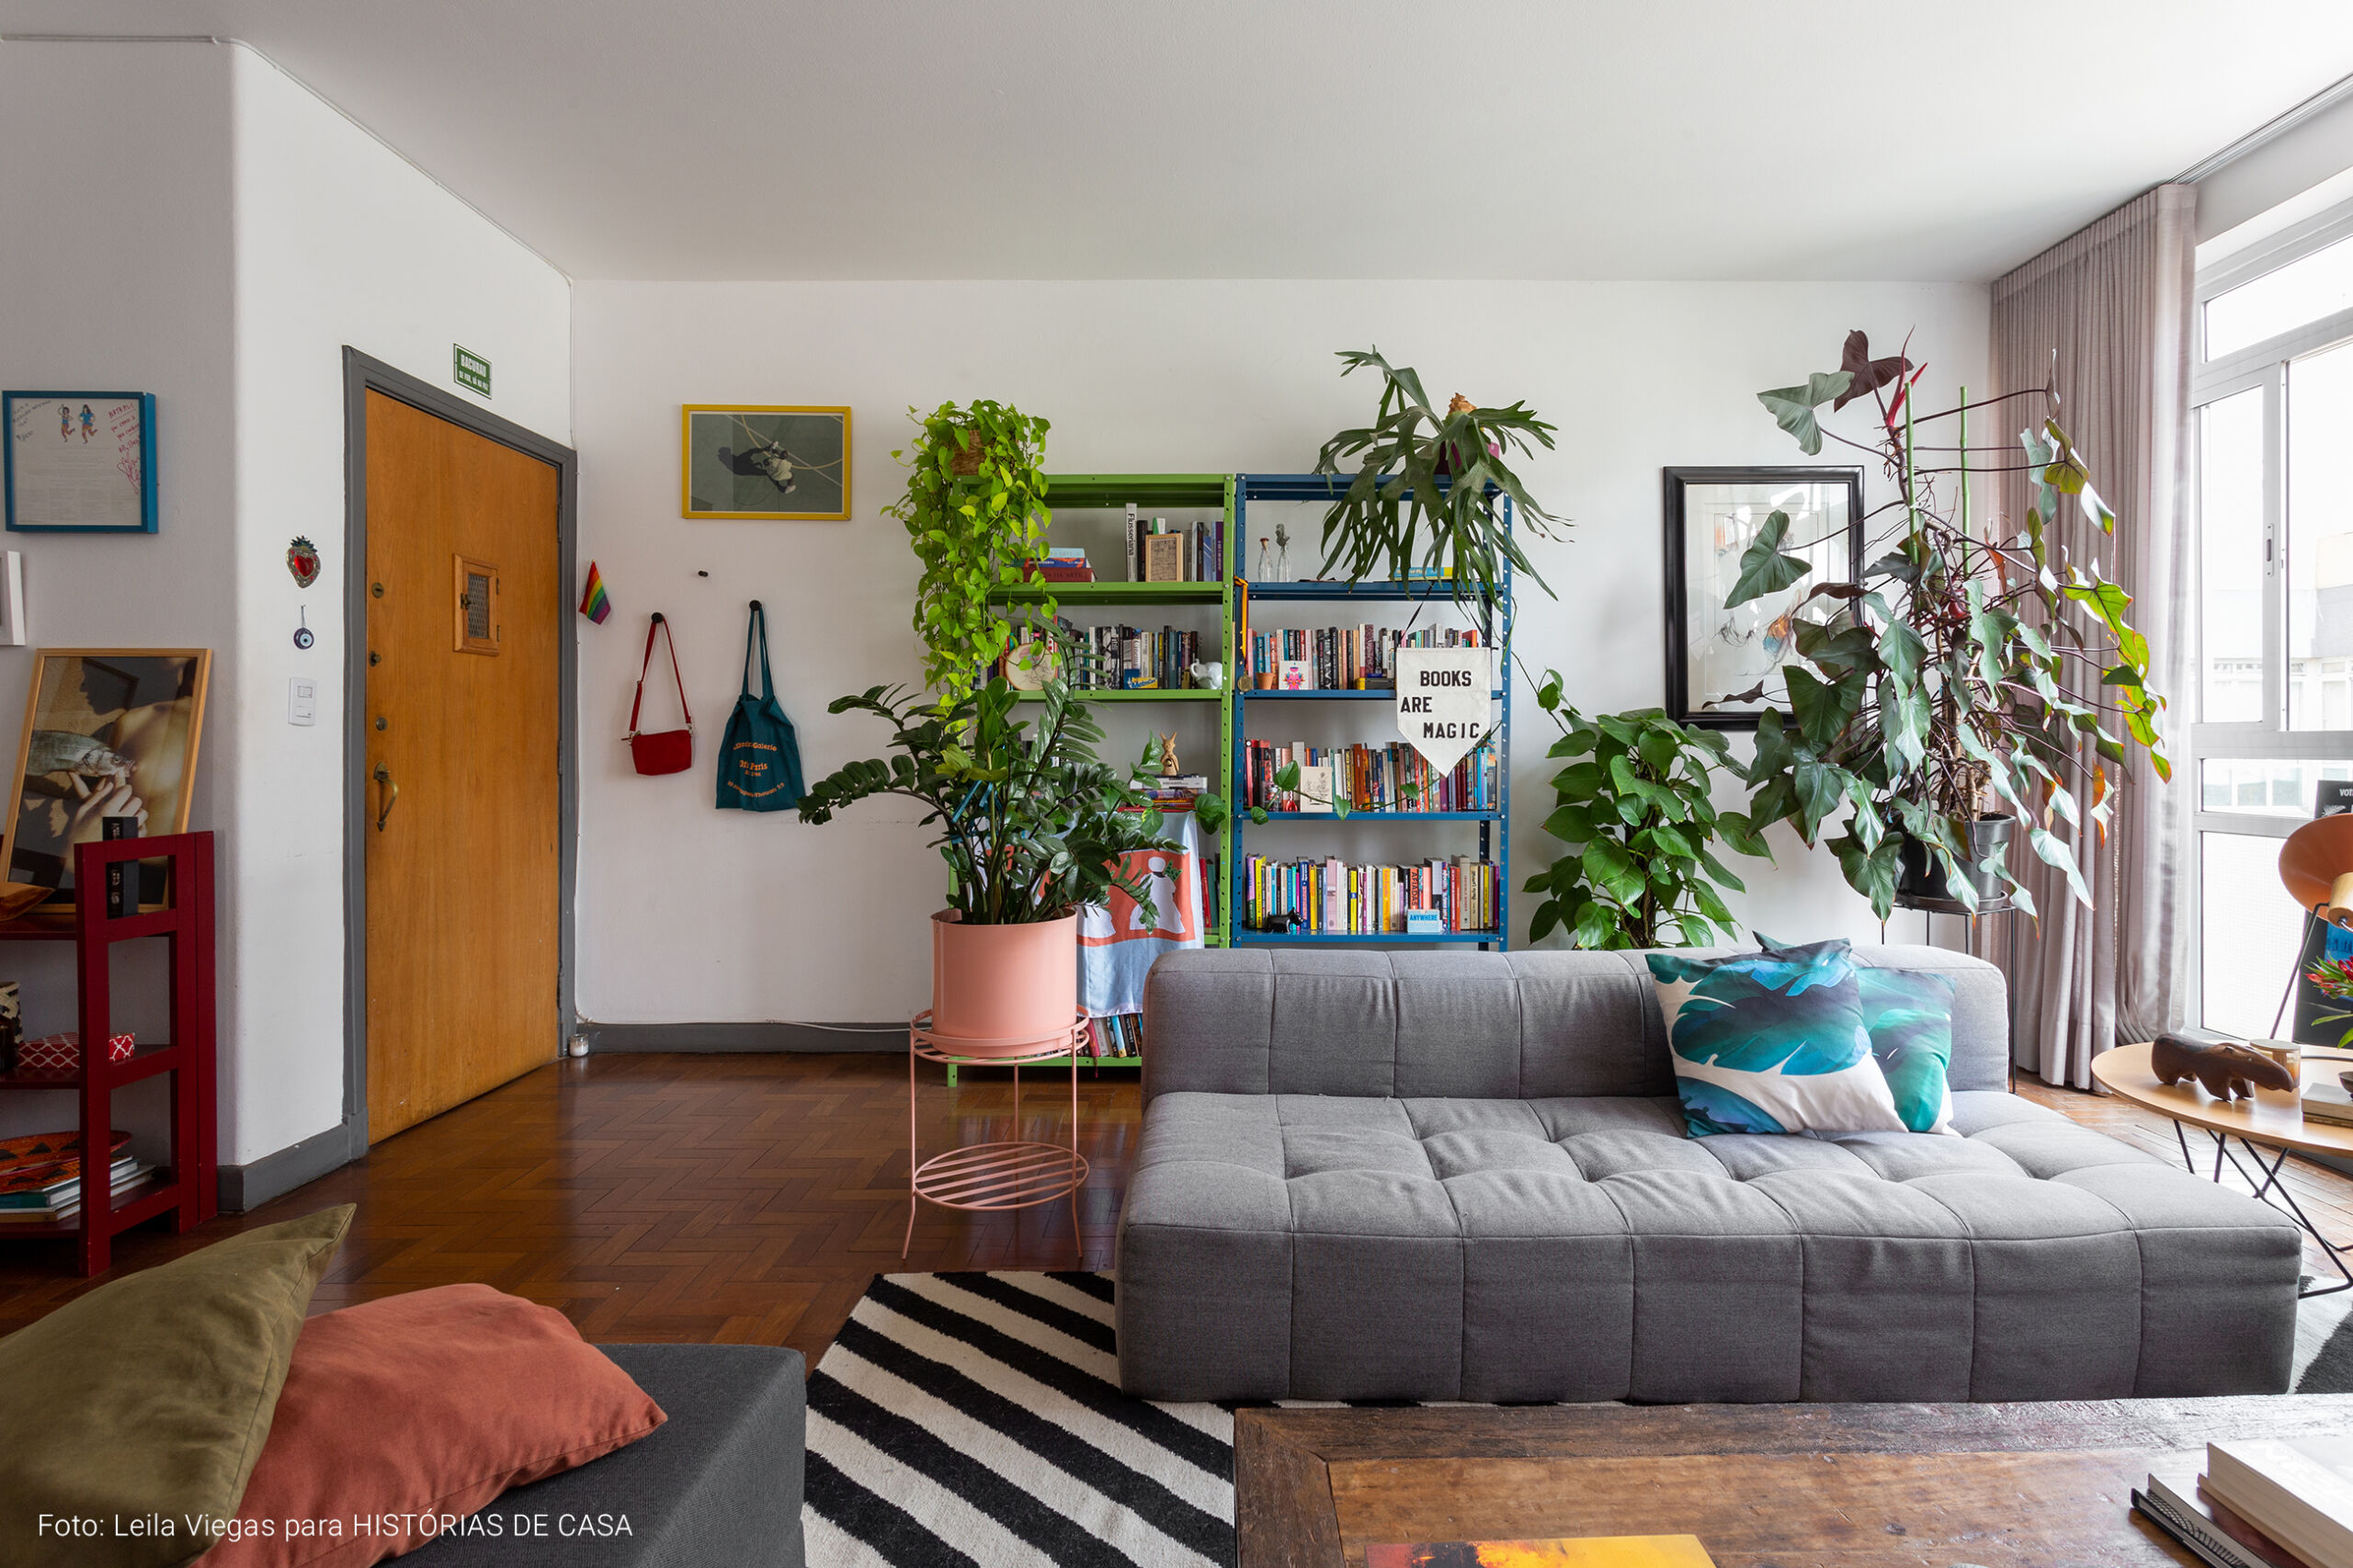 Apartamento alugado e colorido com boas ideias